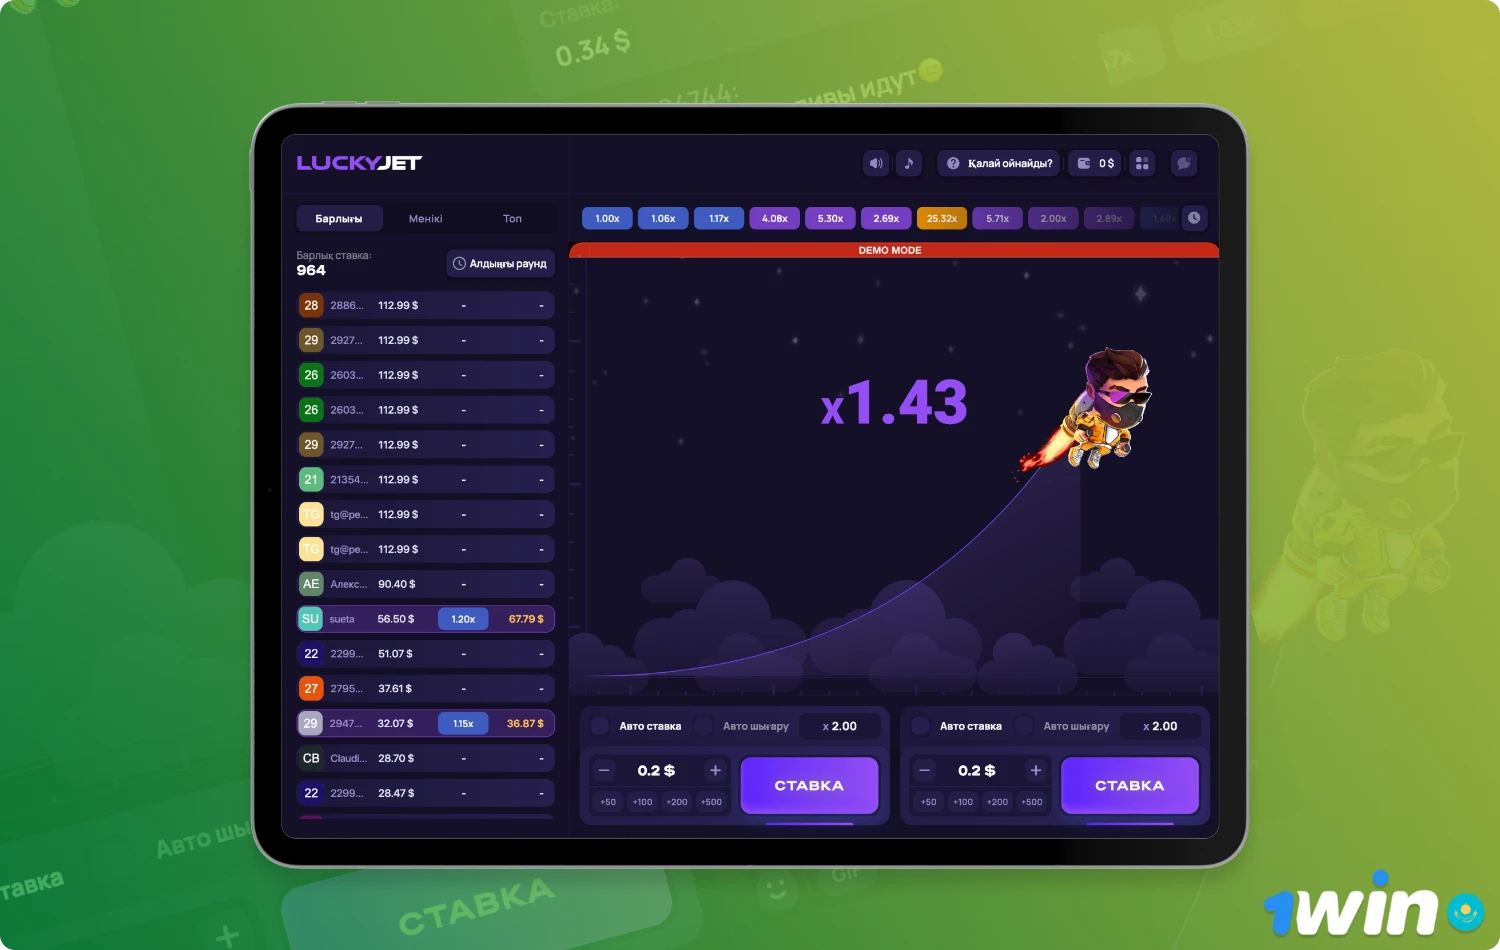 Демо-версия Lucky Jet на платформе 1win позволяет новым пользователям ознакомиться с игровым процессом, прежде чем играть на реальные деньги